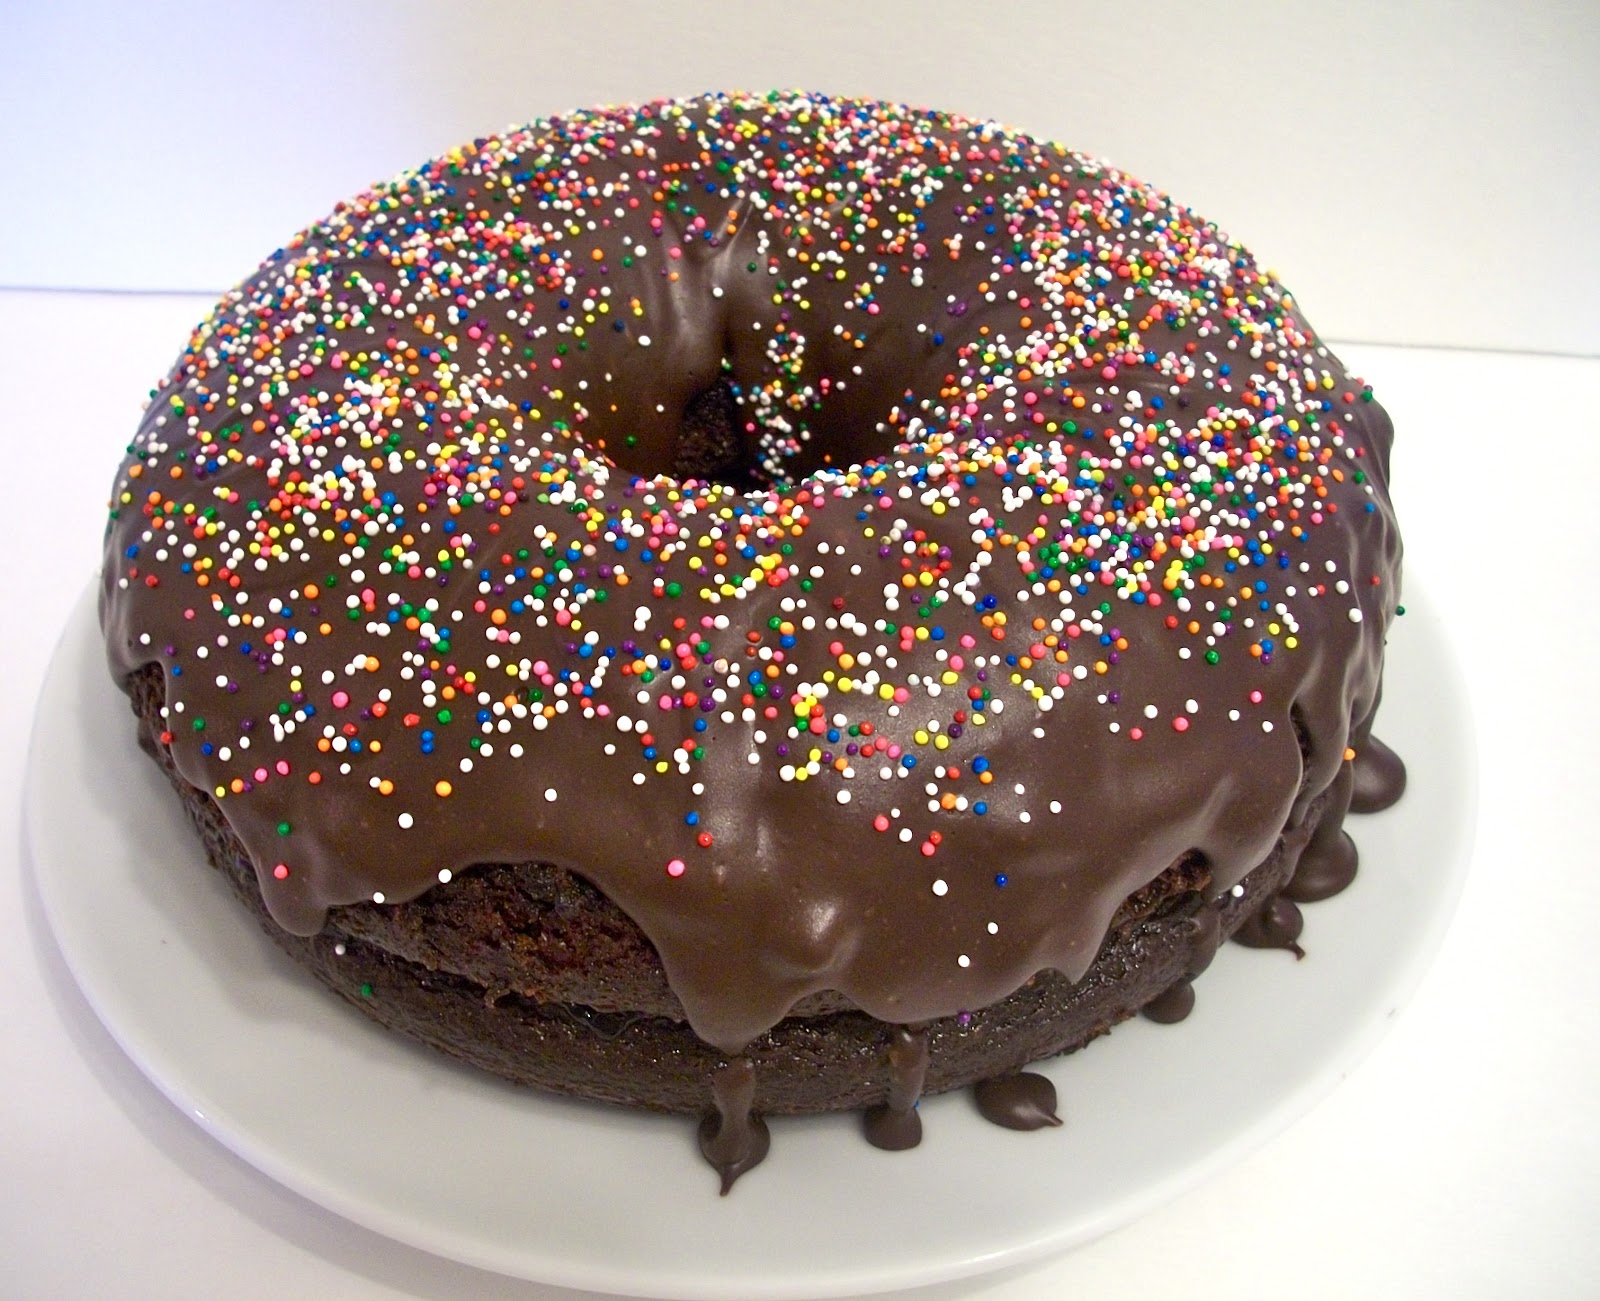 How to make a Doughnut Cake - Veena Azmanov